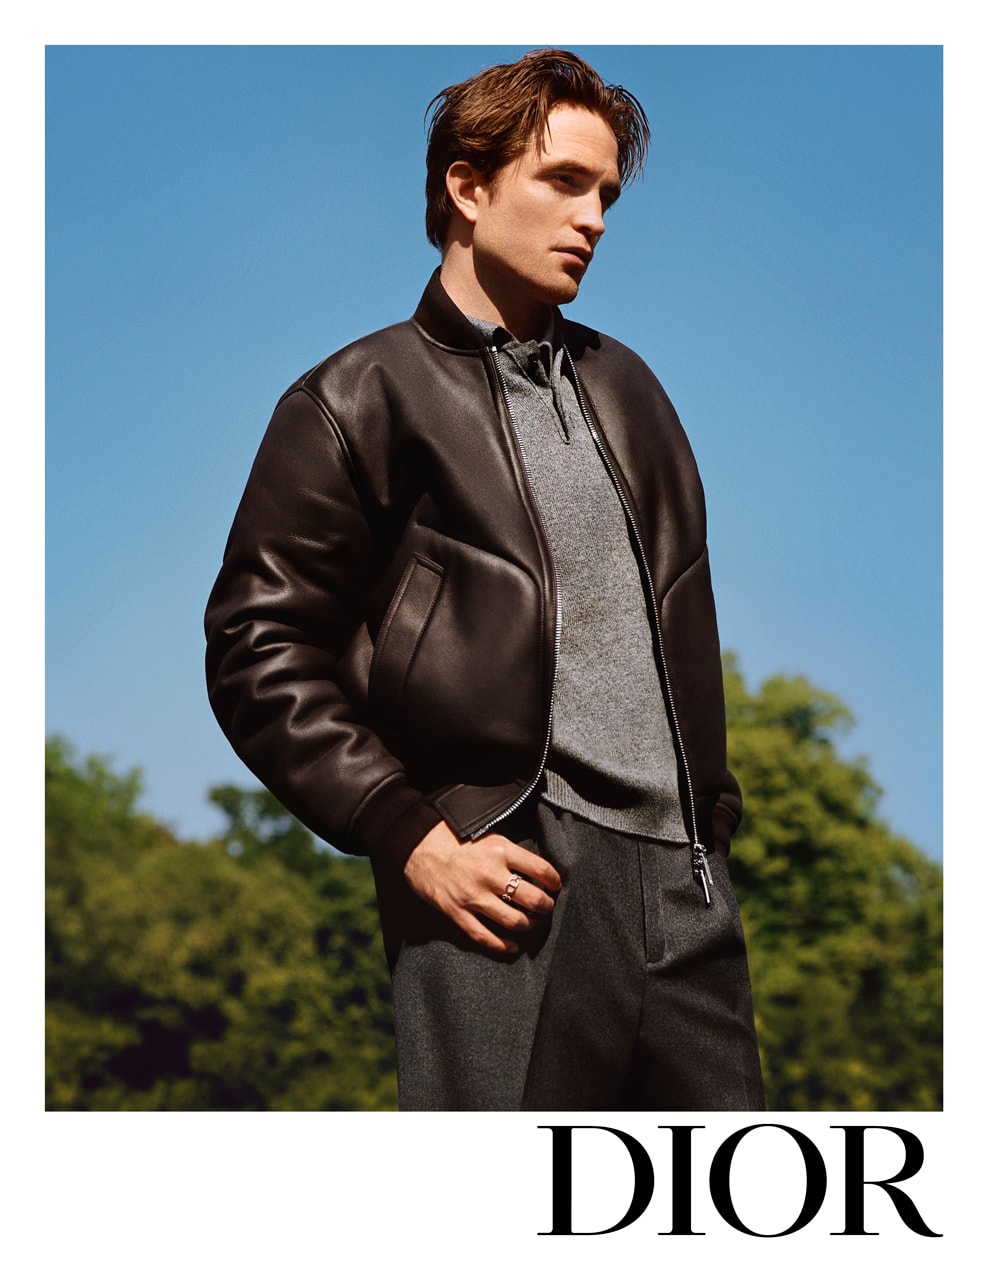 Dior Icons x Robert Pattinson / Foto vía Dior